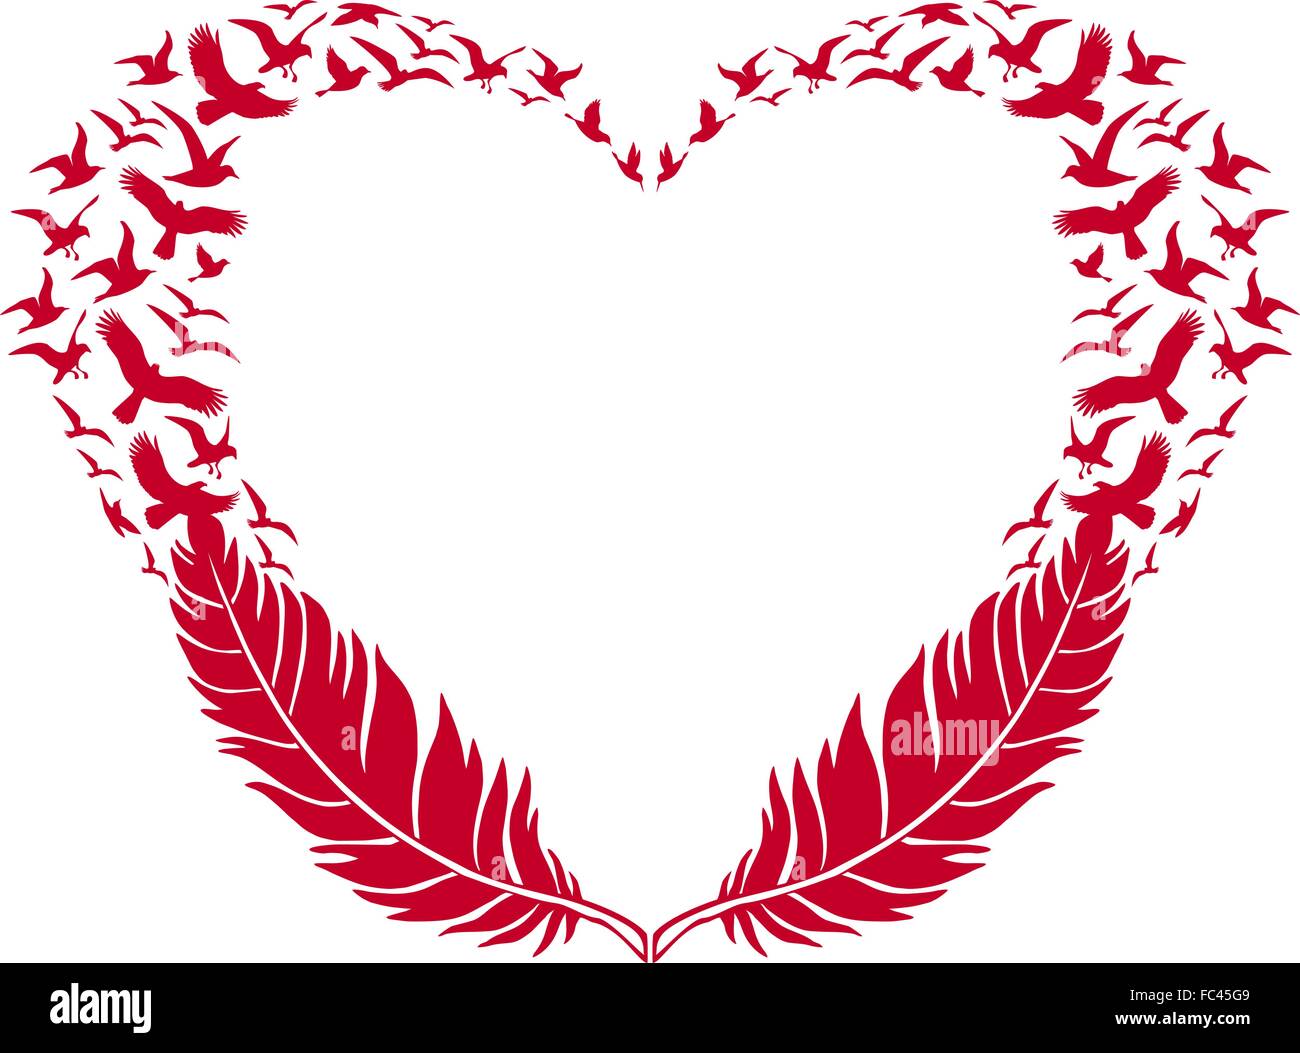 Rotes Herz mit Federn und fliegende Vögel, Vector Illustration für den Valentinstag Stock Vektor